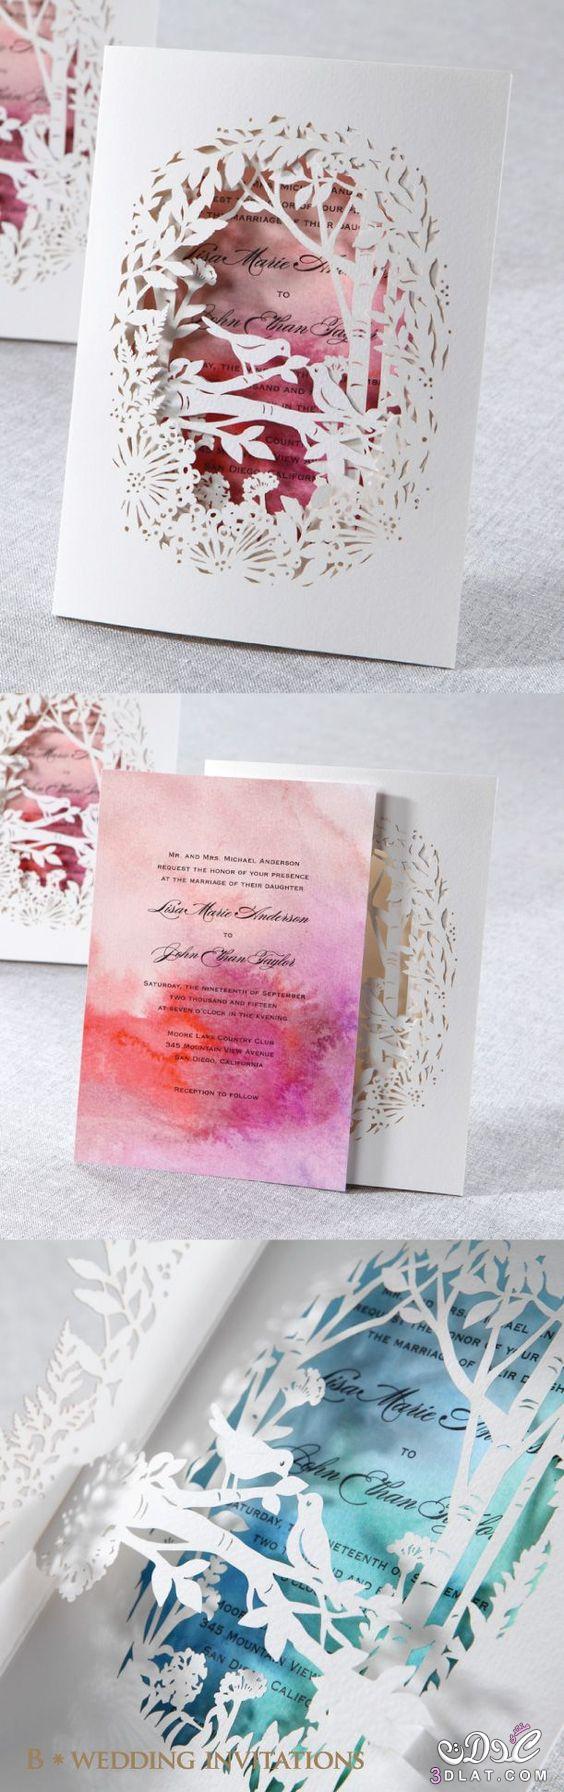 دعوات الزفاف باجمل الالوان ، بطاقات زفاف راقيه وجميله جدا